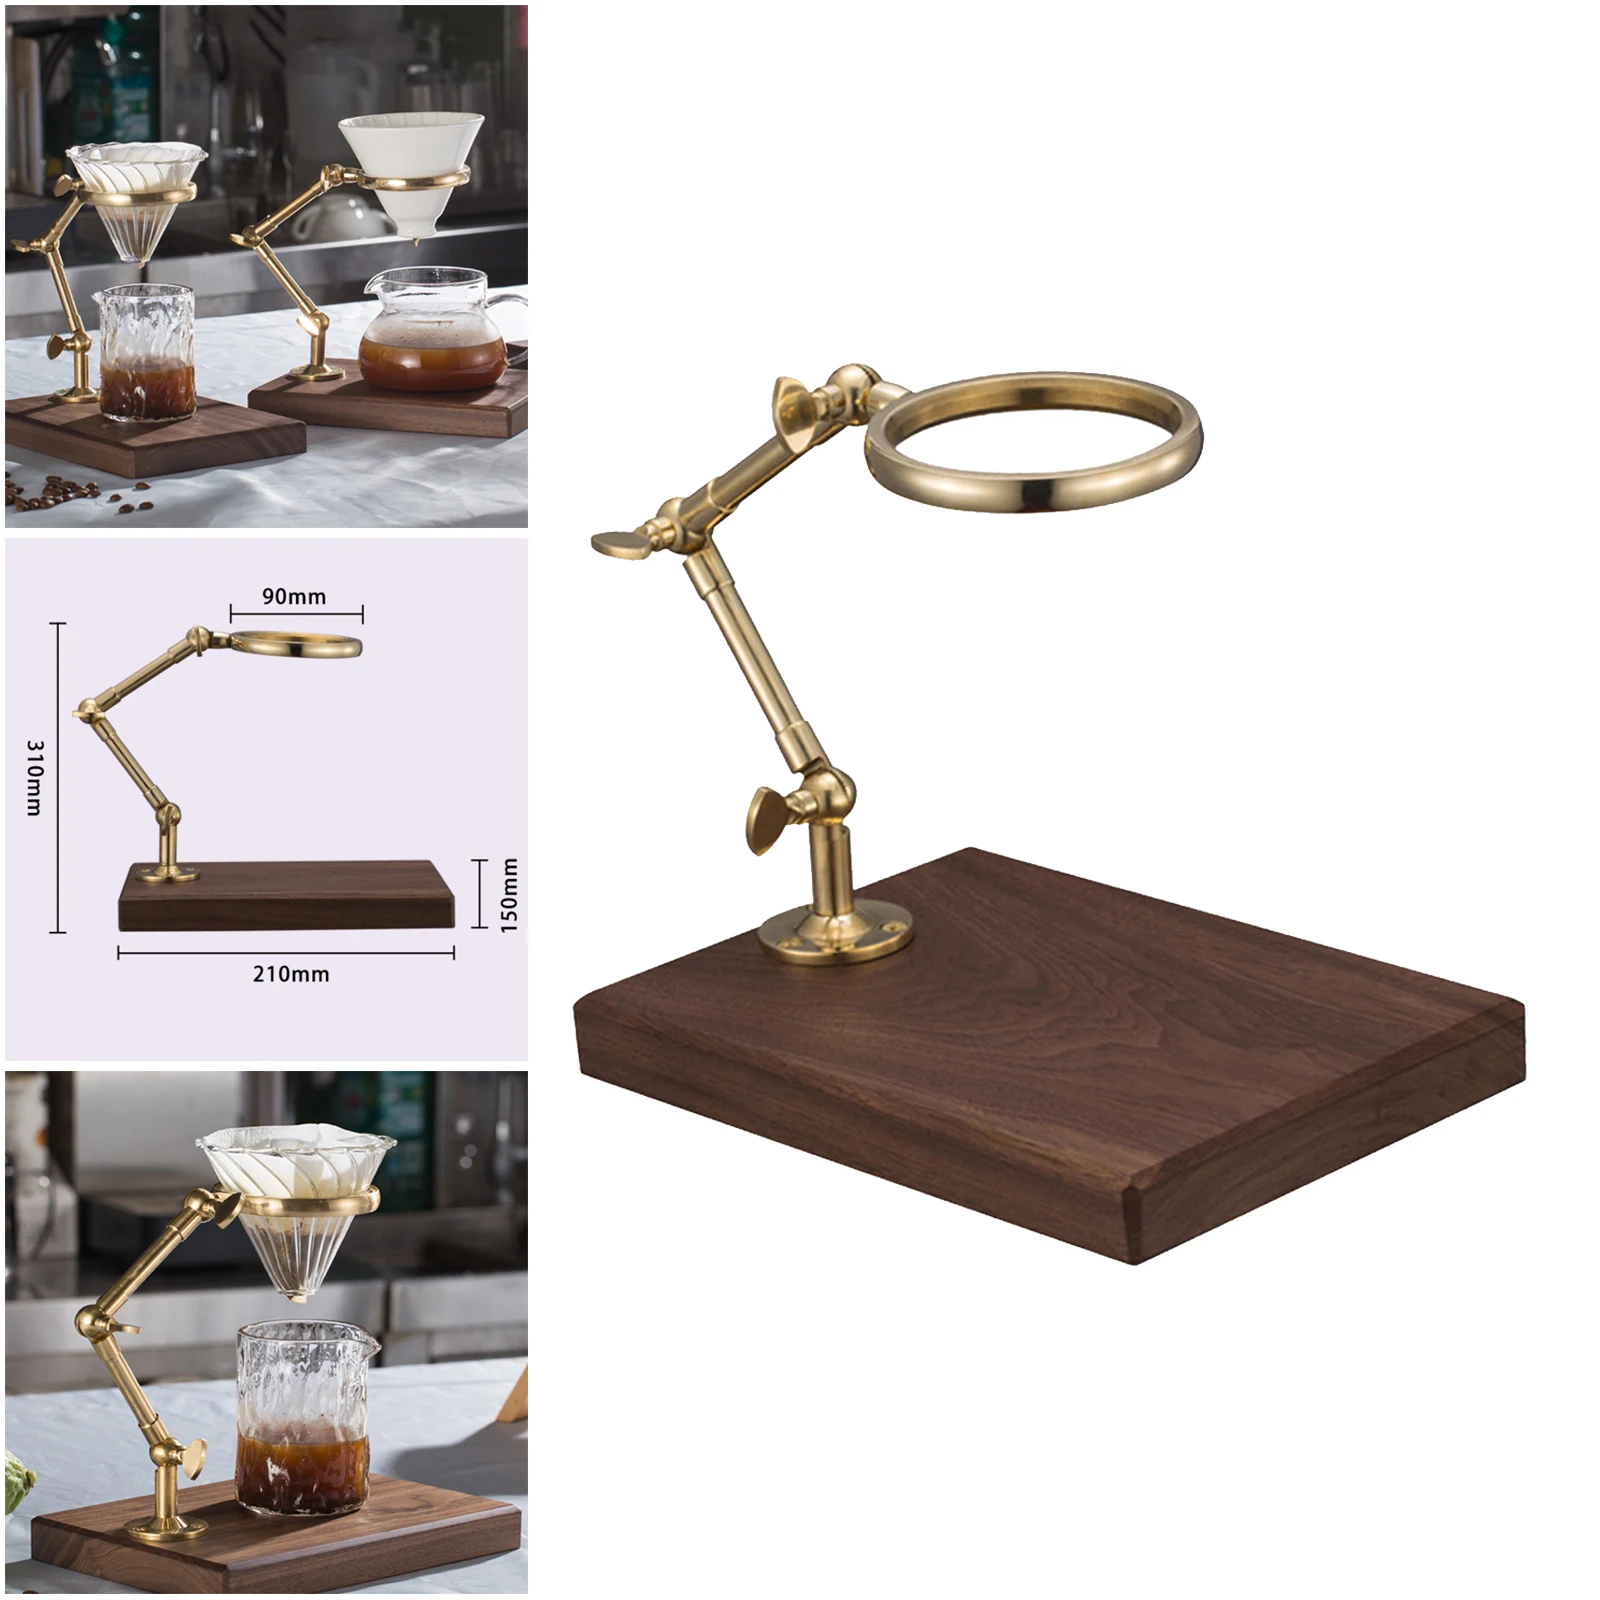 Brass Frame Coffee Rack Filter Cup Holder Tea Filter Drop Bracket Adjustable Height Solid Wood Base